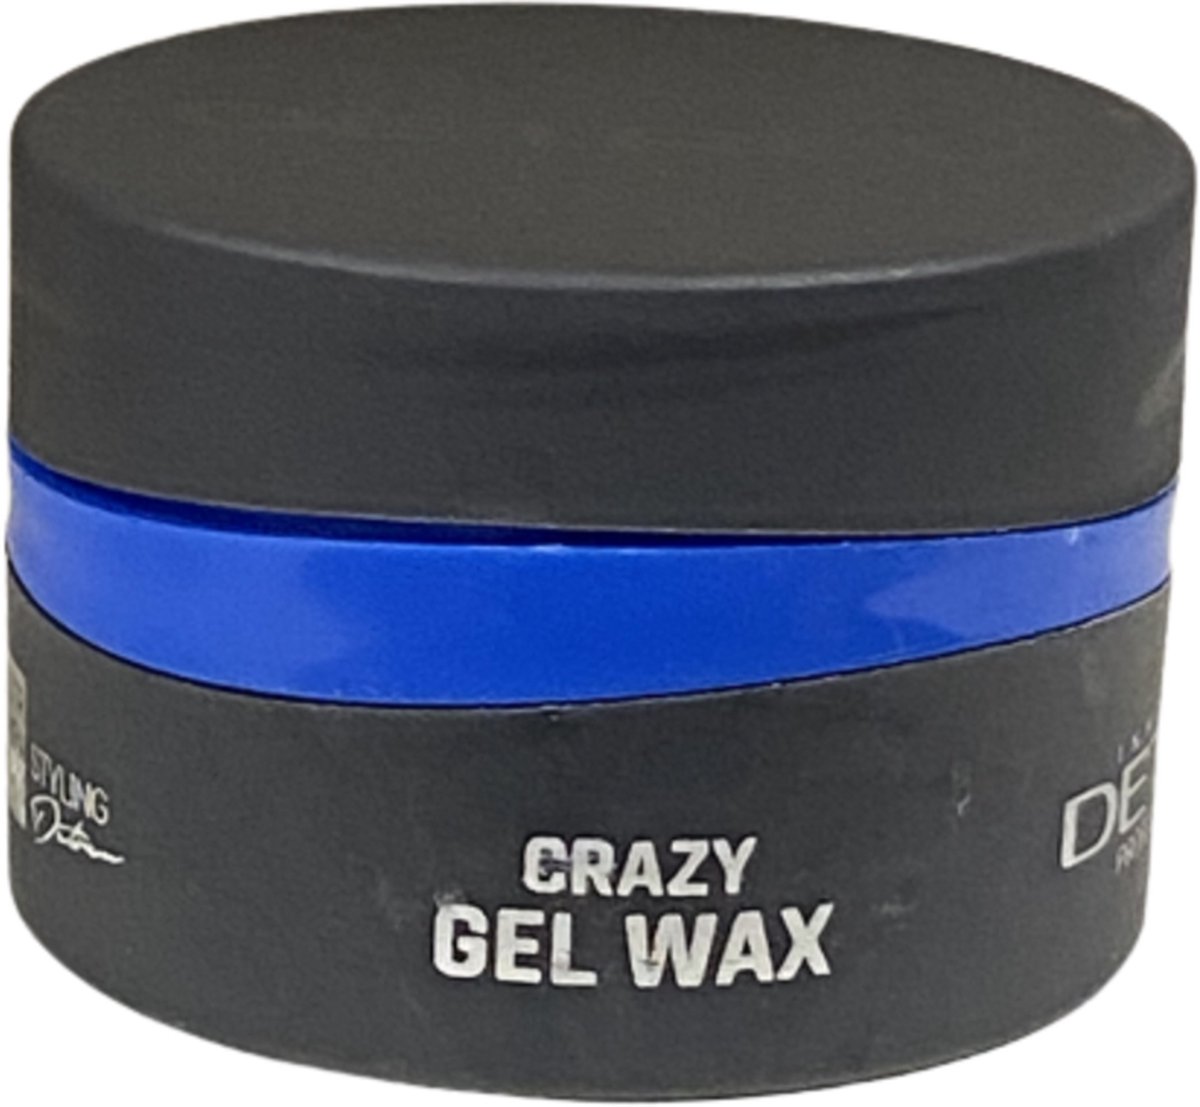 Detreu Professional Crazy Gel Wax 150 ml